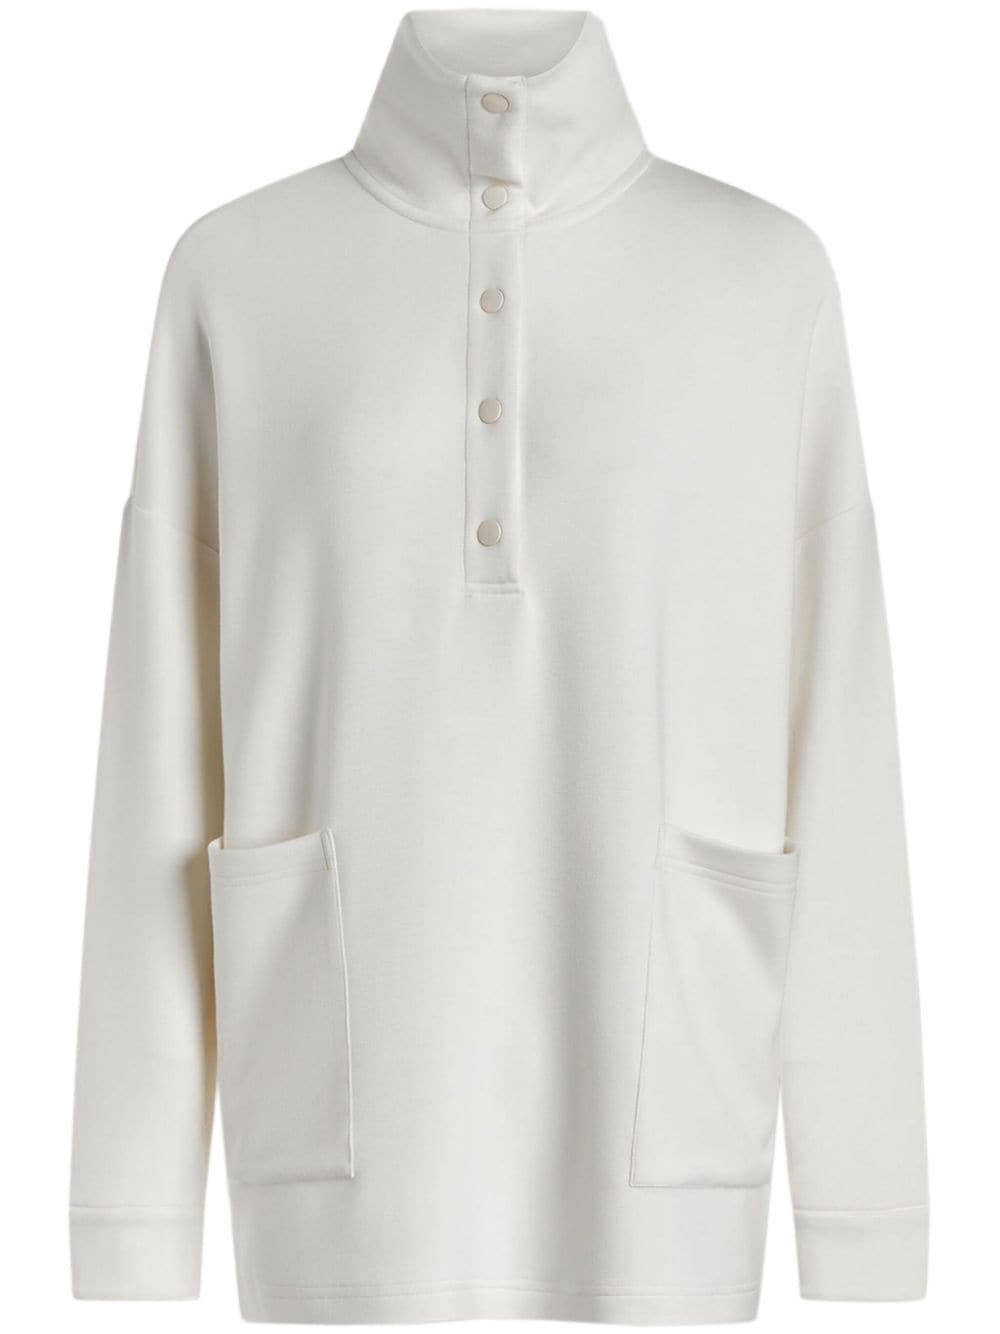 Varley Meredith Longline Sweatshirt In White